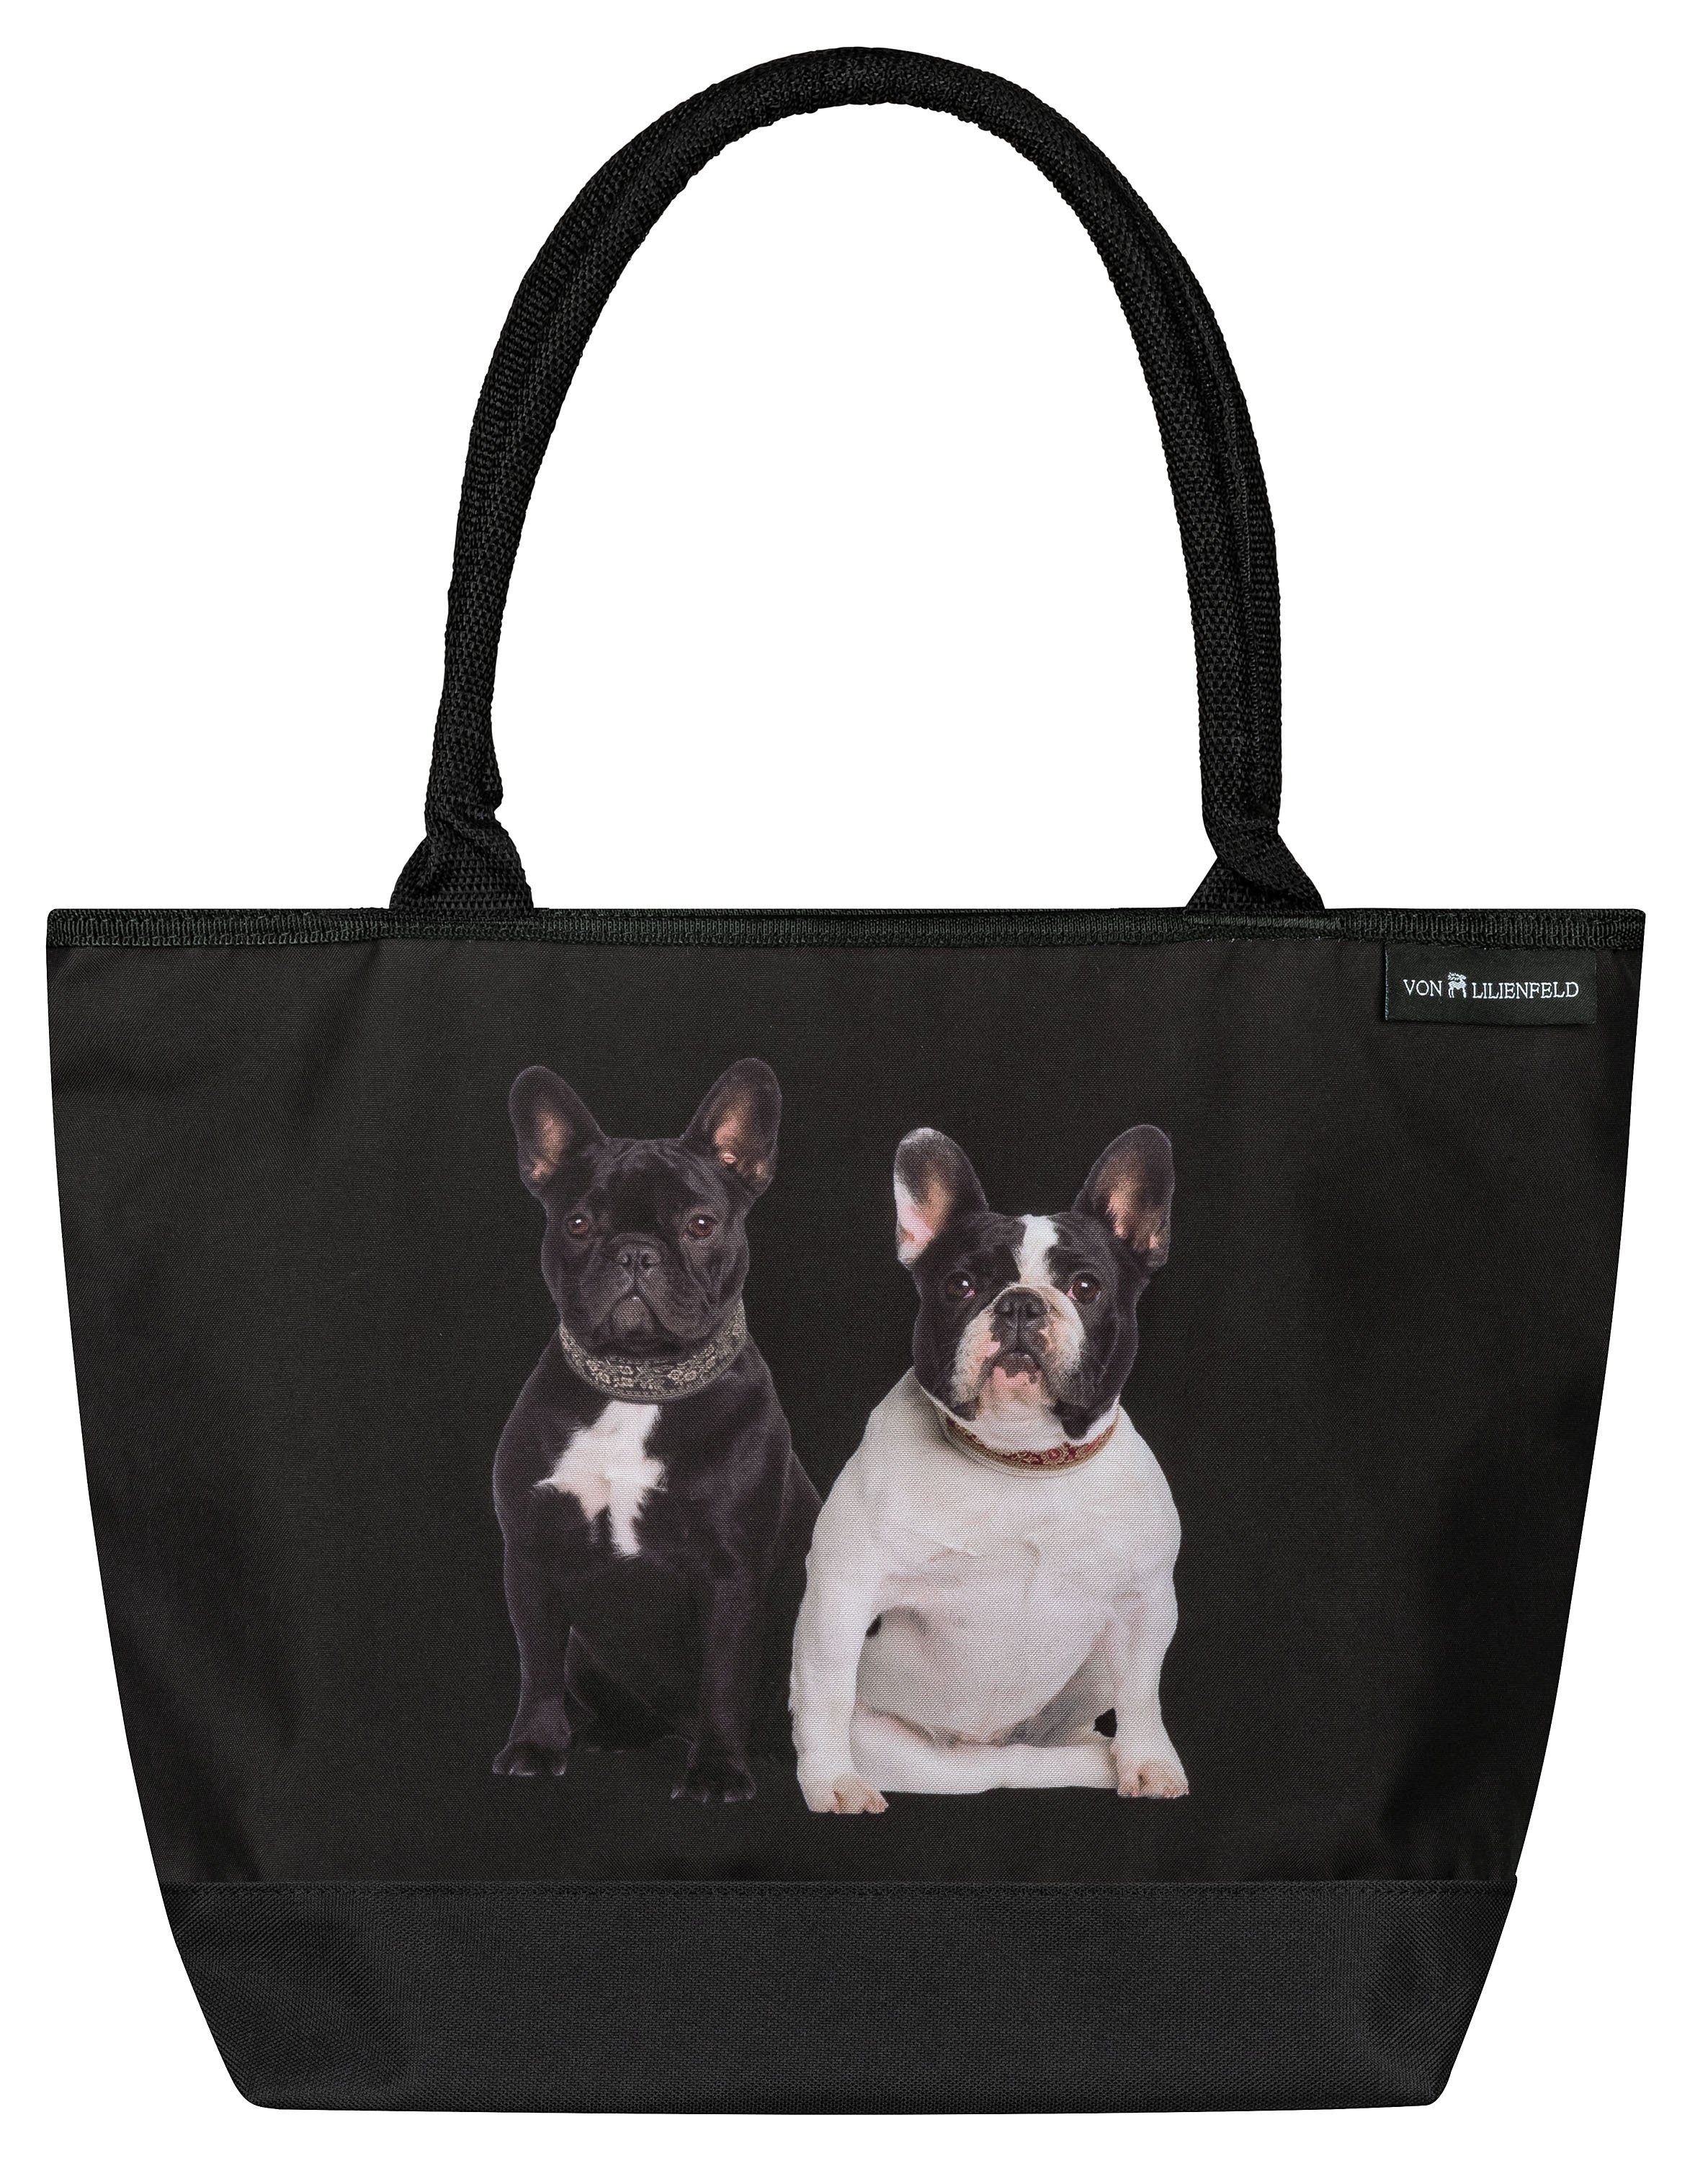 Hund auf der mit von Bulldoggen Tasche Handtasche Motivdruck Forderseite Französische Shopper, Lilienfeld Hundemotiv